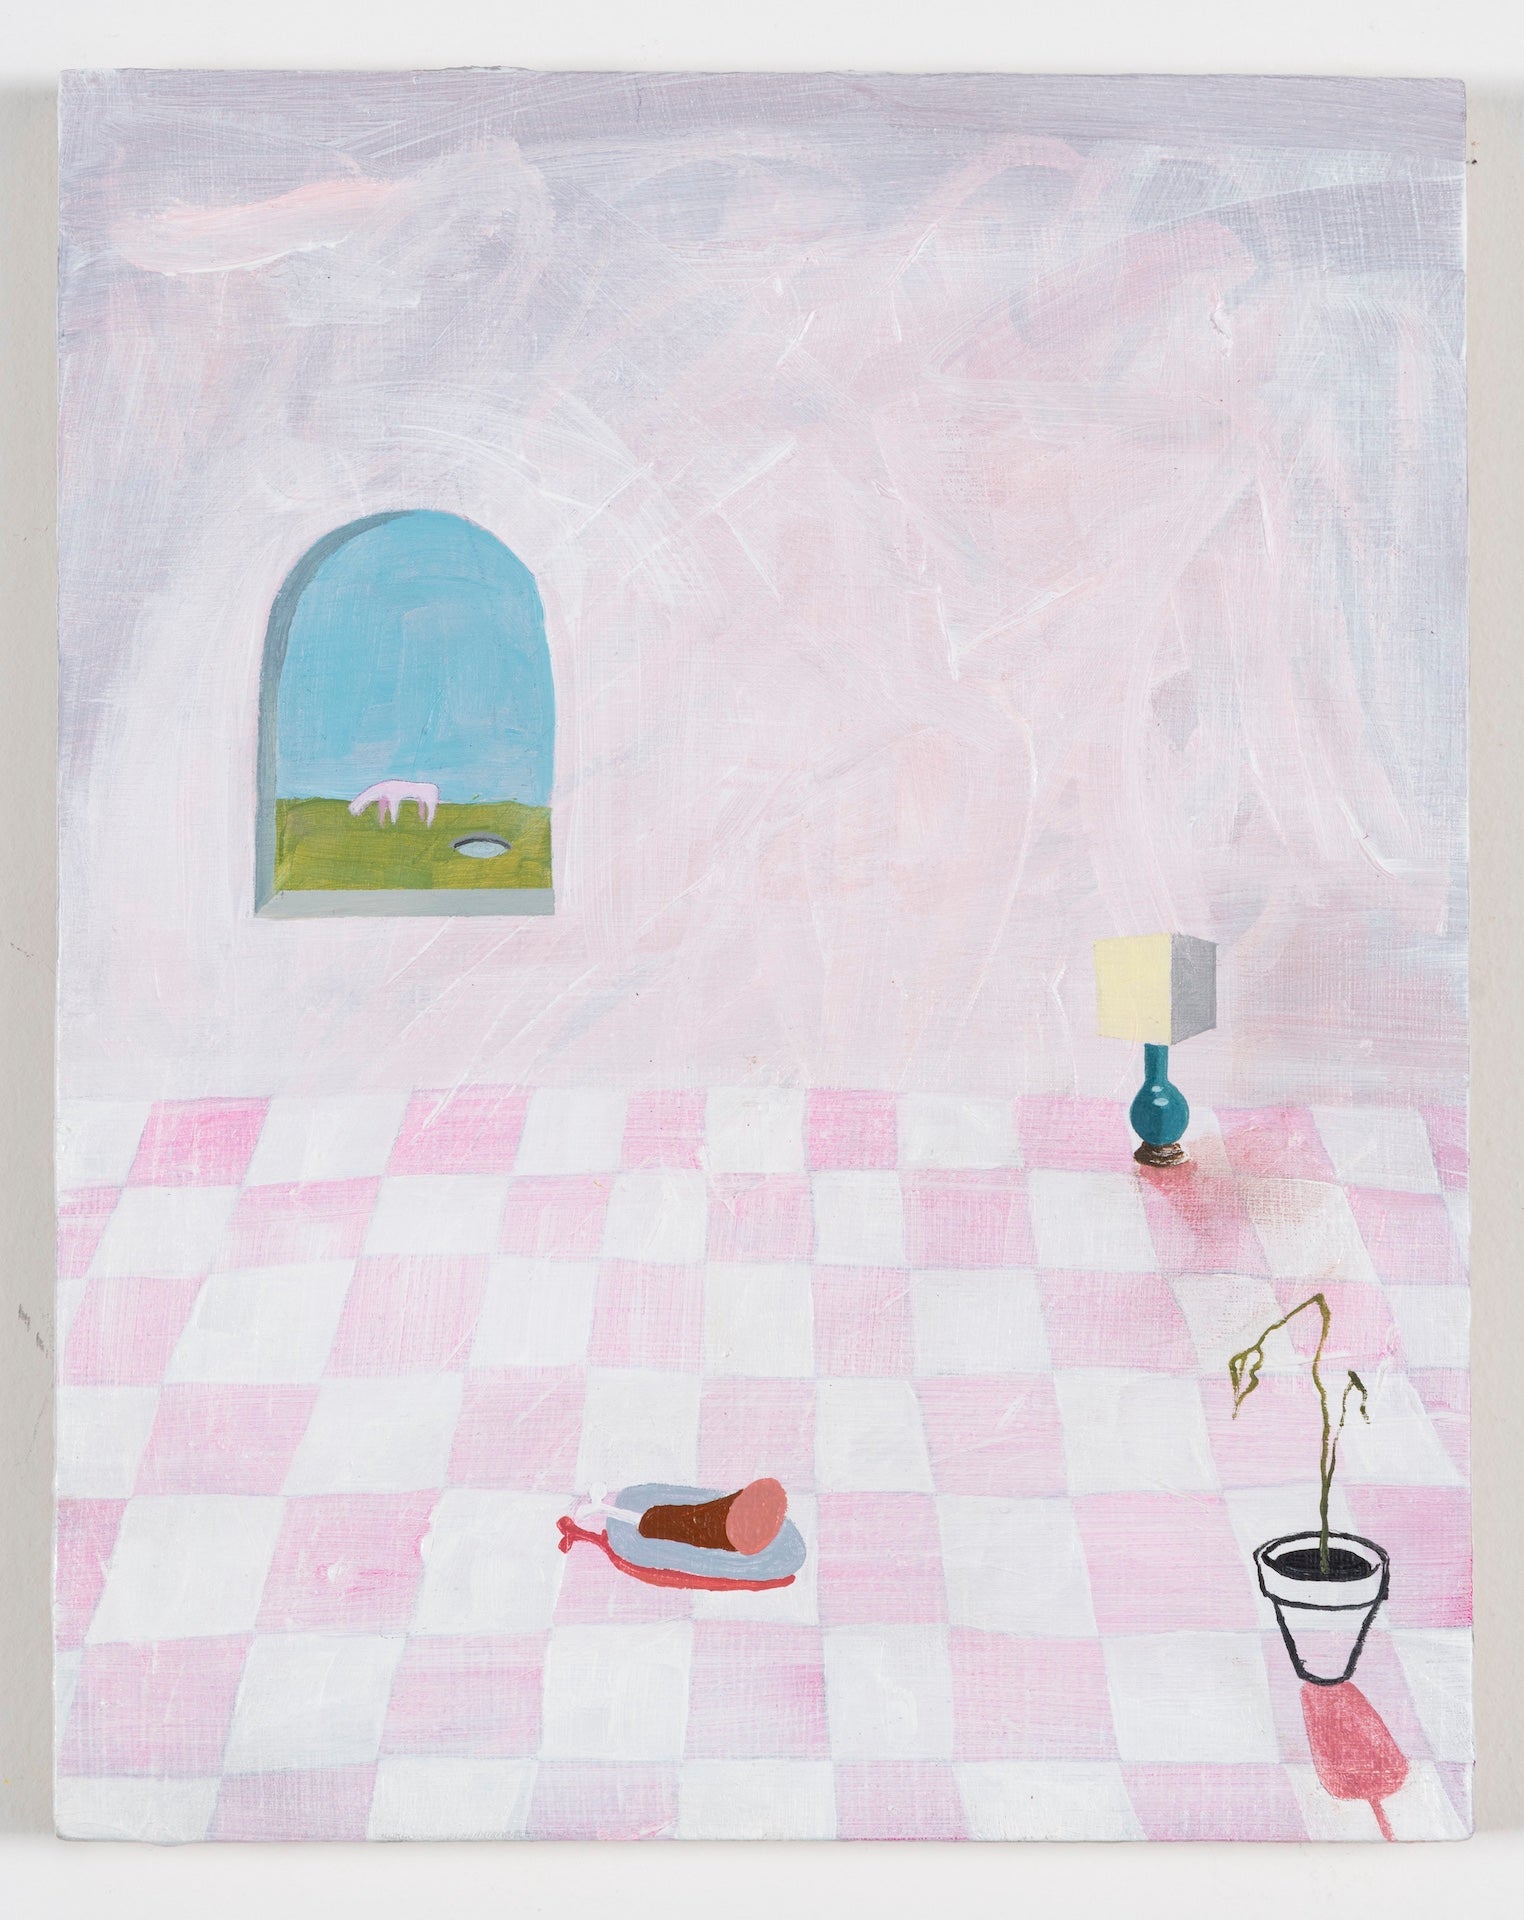 Lena Christakis, "Across the room"